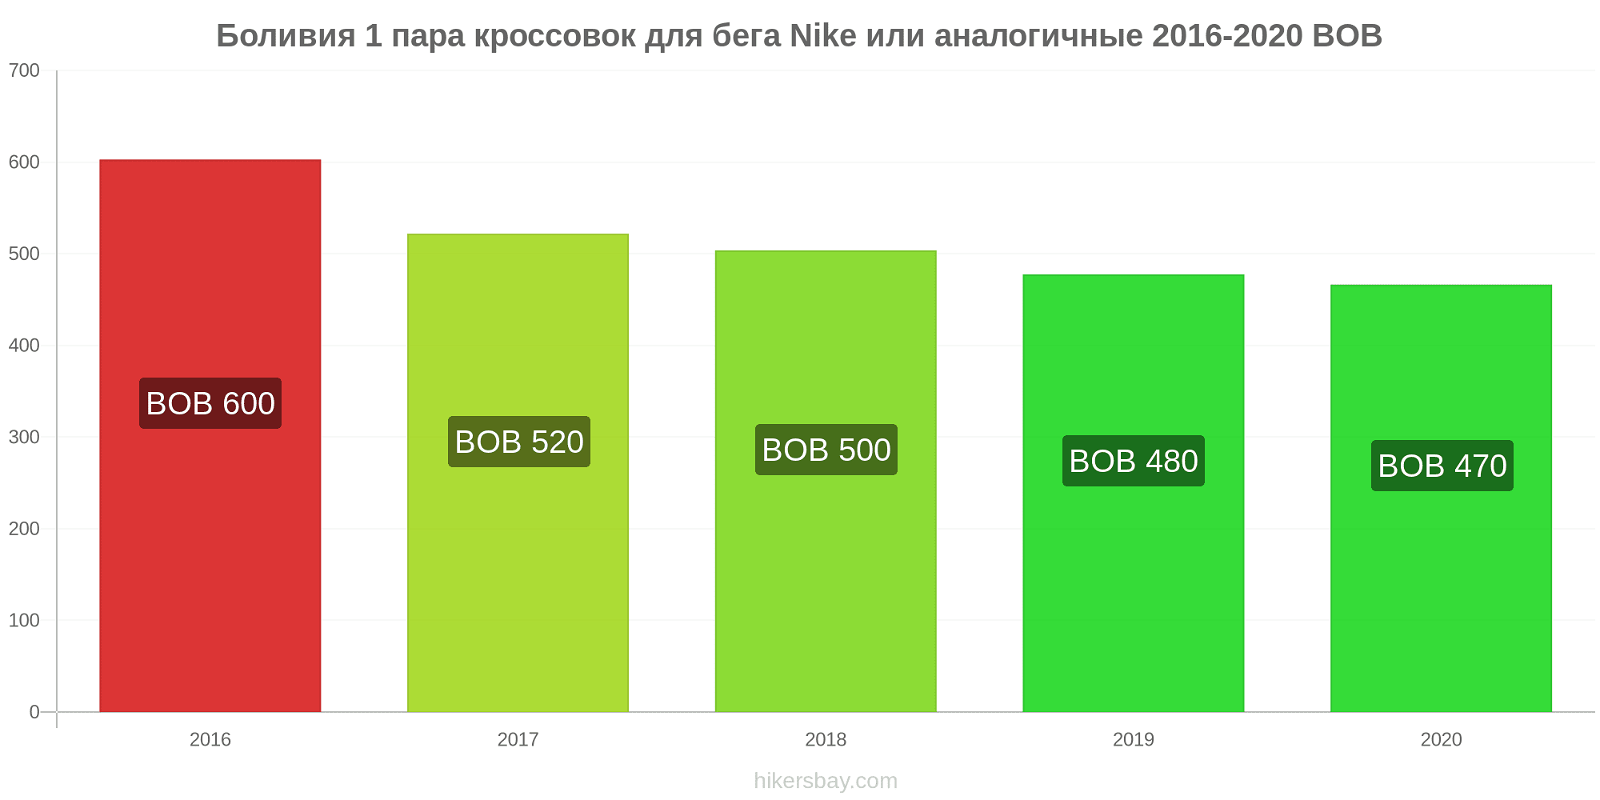 Боливия изменения цен 1 пара кроссовок для бега Nike или аналогичные hikersbay.com